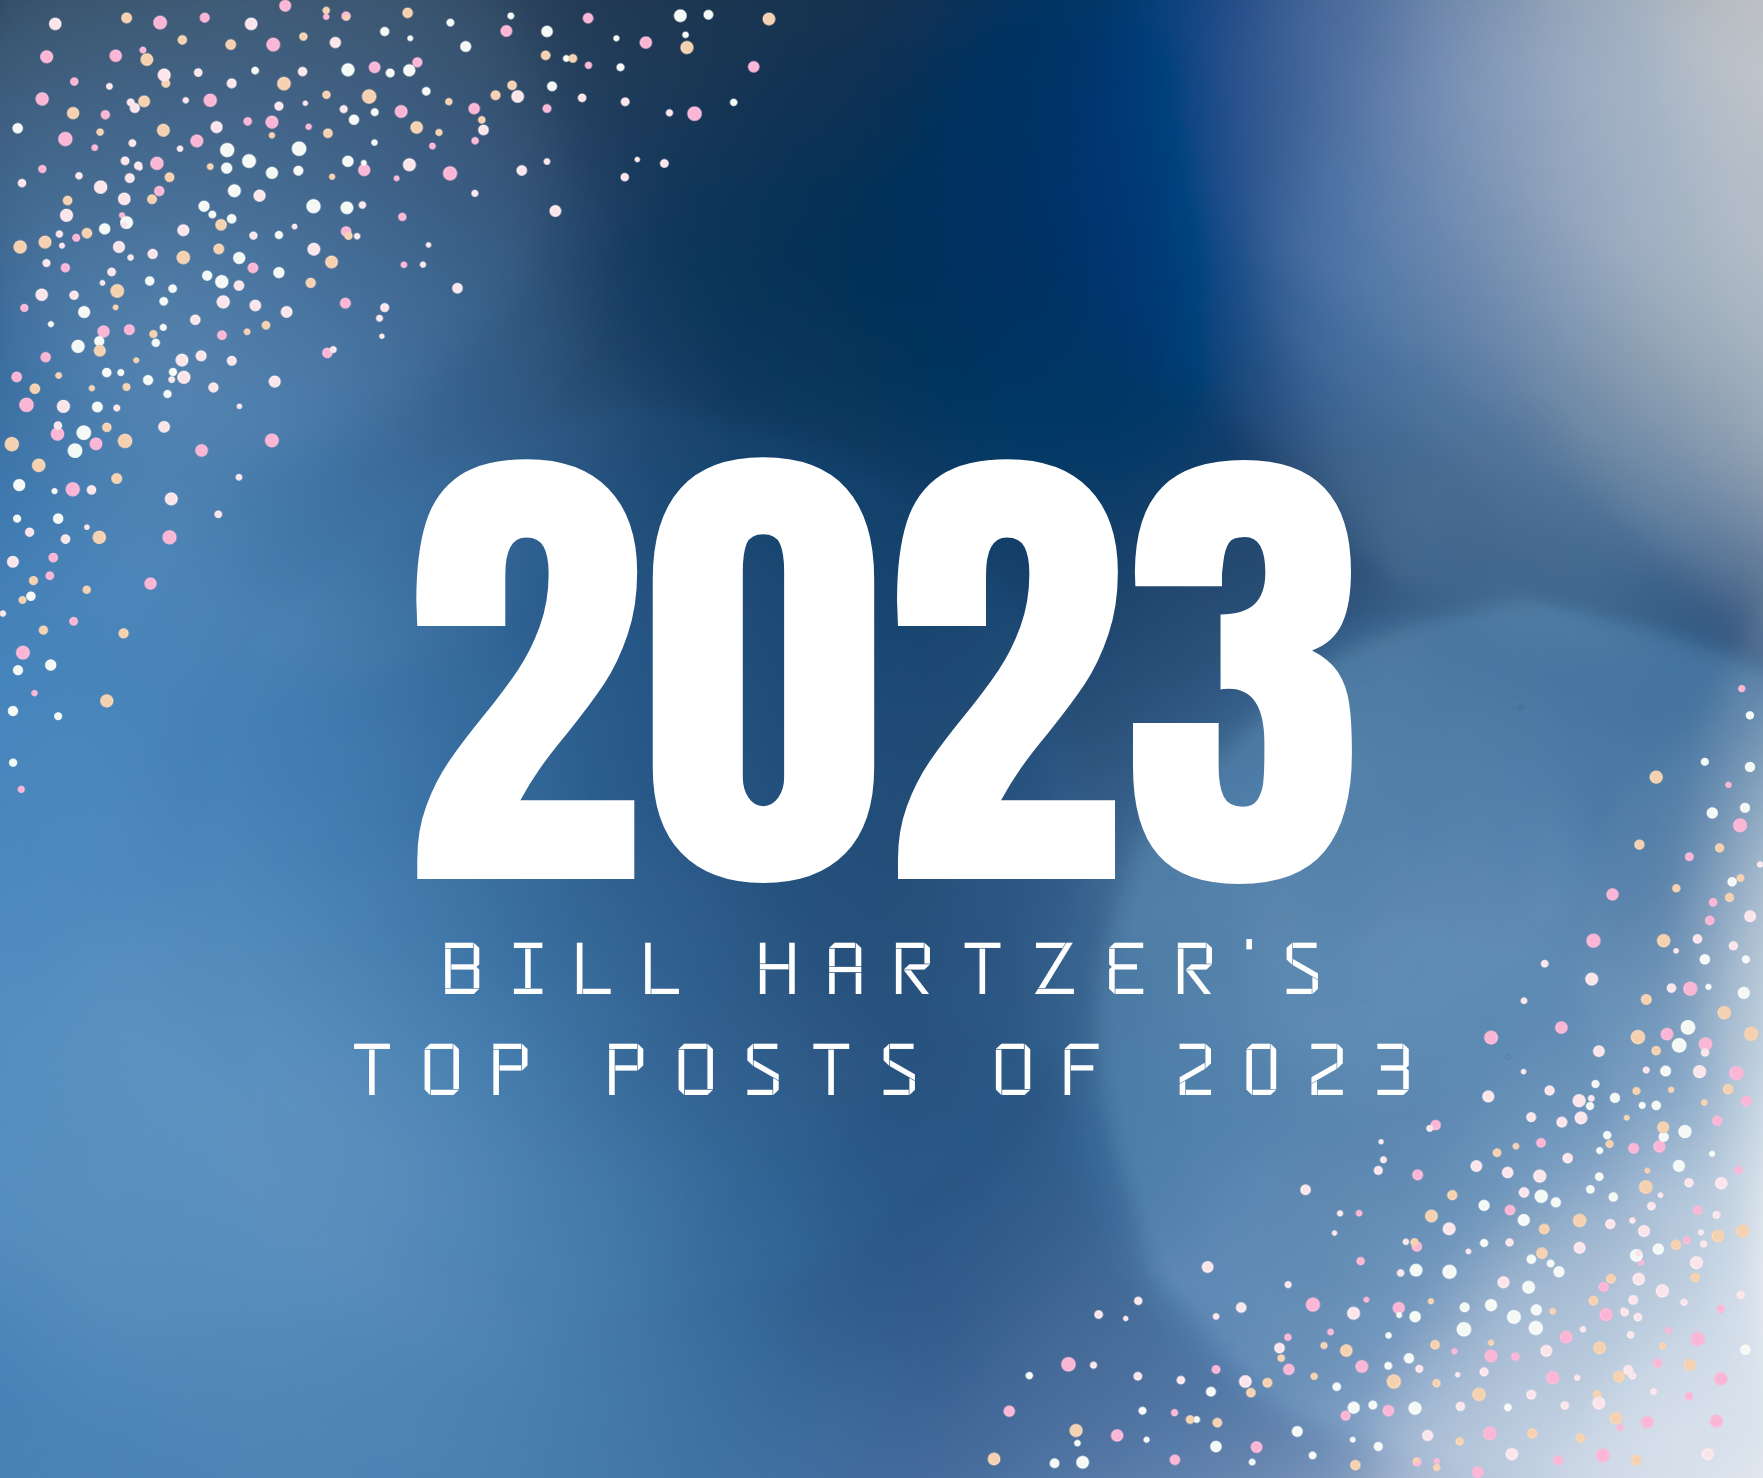 Bill Hartzer’s Top Posts of 2023